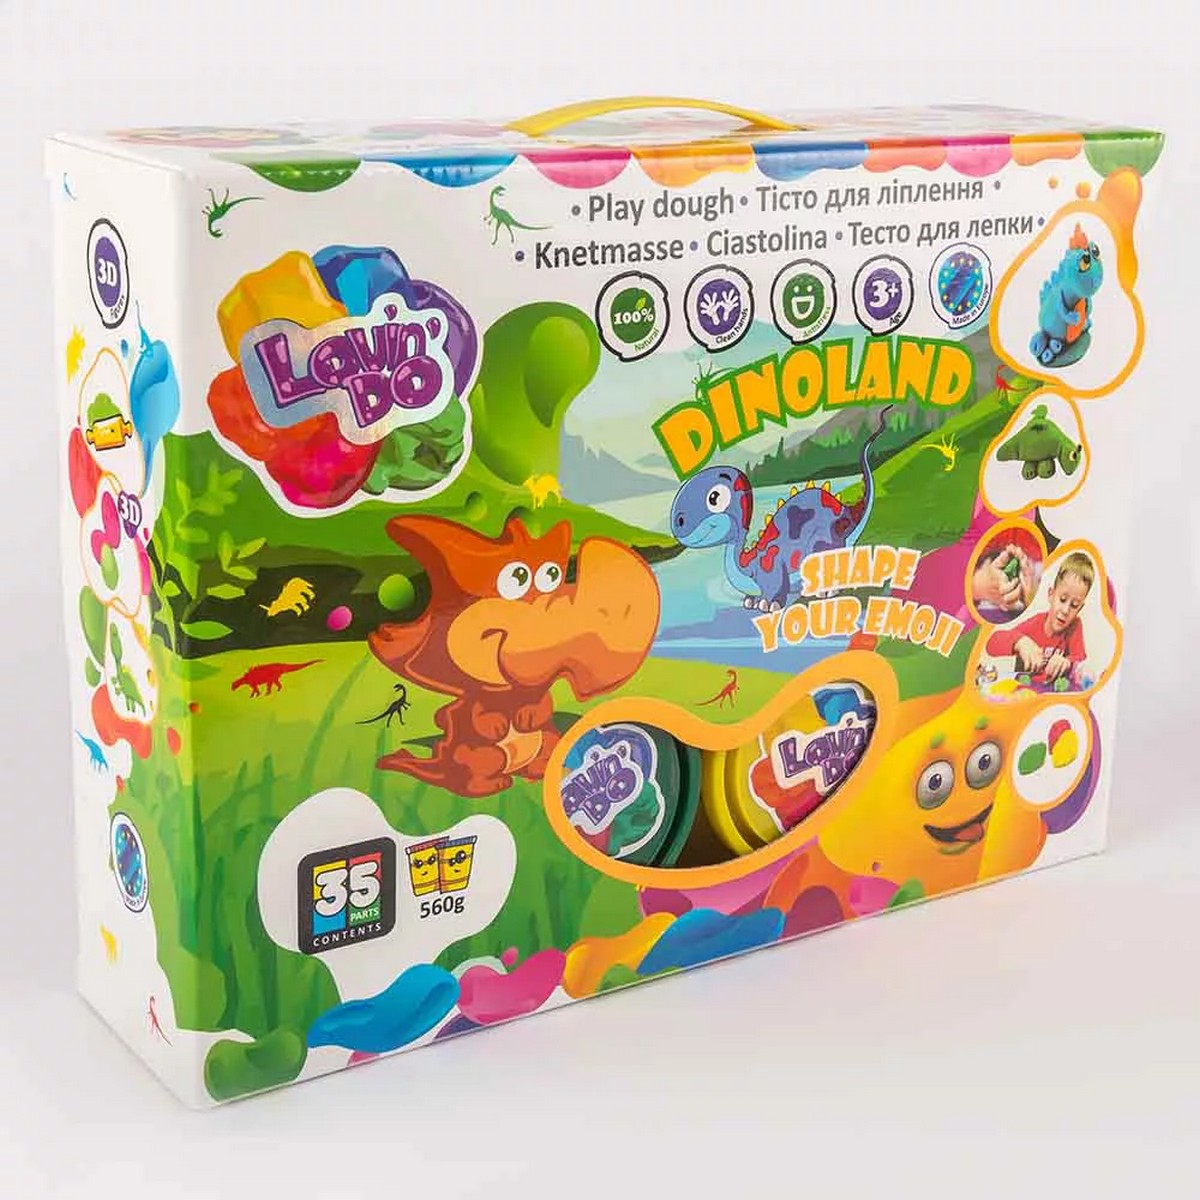 Knete Modellierung Knetmasse Kinder Spielzeug geschenk Idee Dinoland LovinD SET